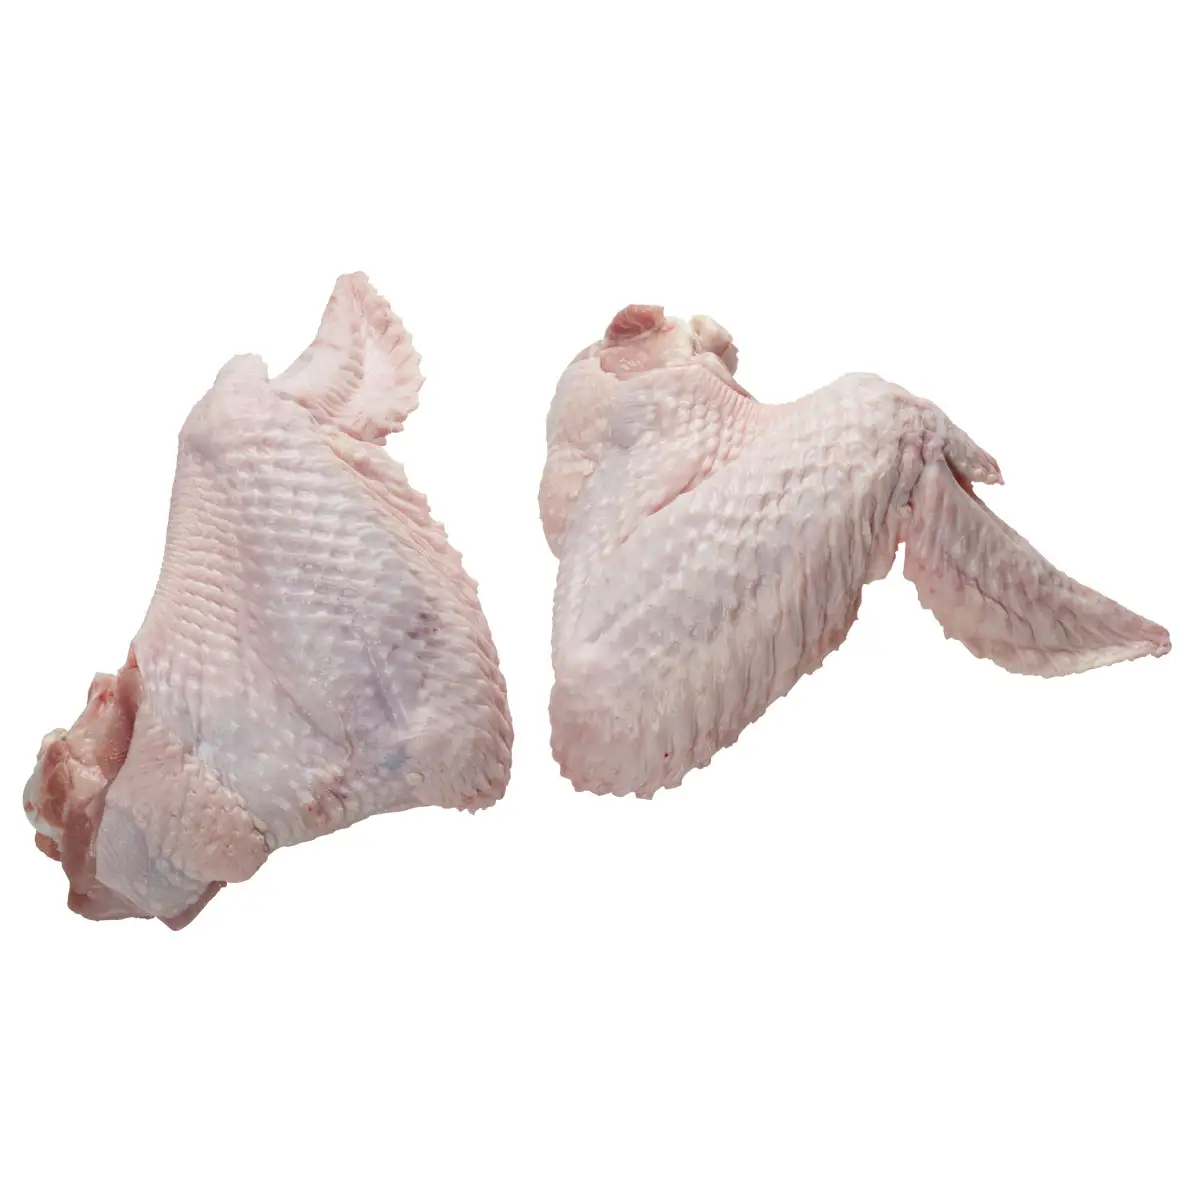 Low price Frozen Chicken Feet Brazil/CHicken Wings for sale